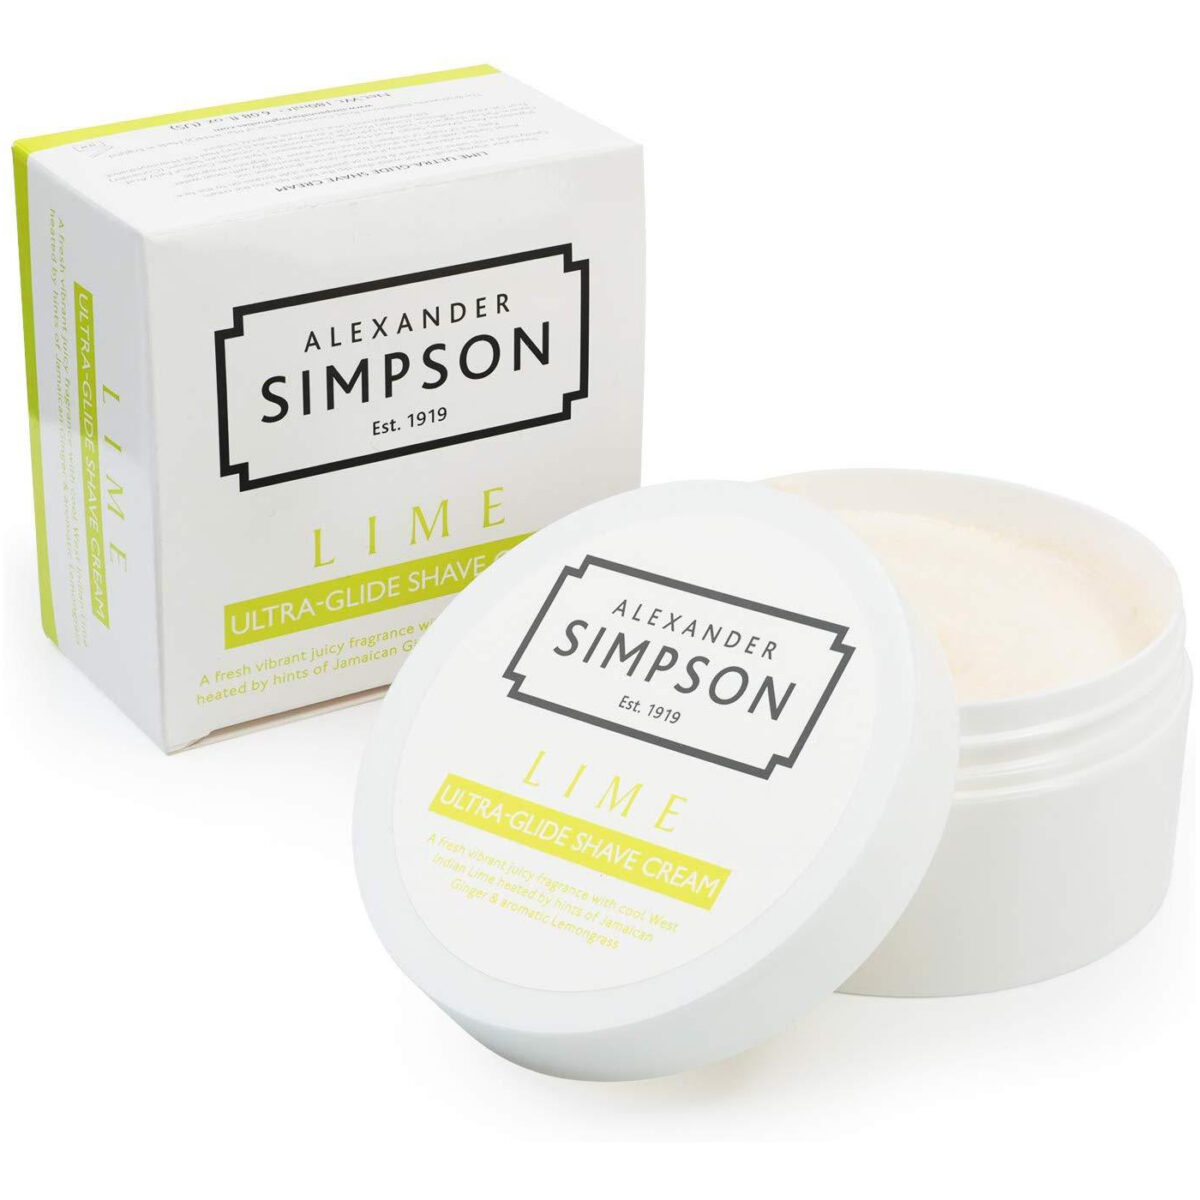 Simpson luxury shaving cream